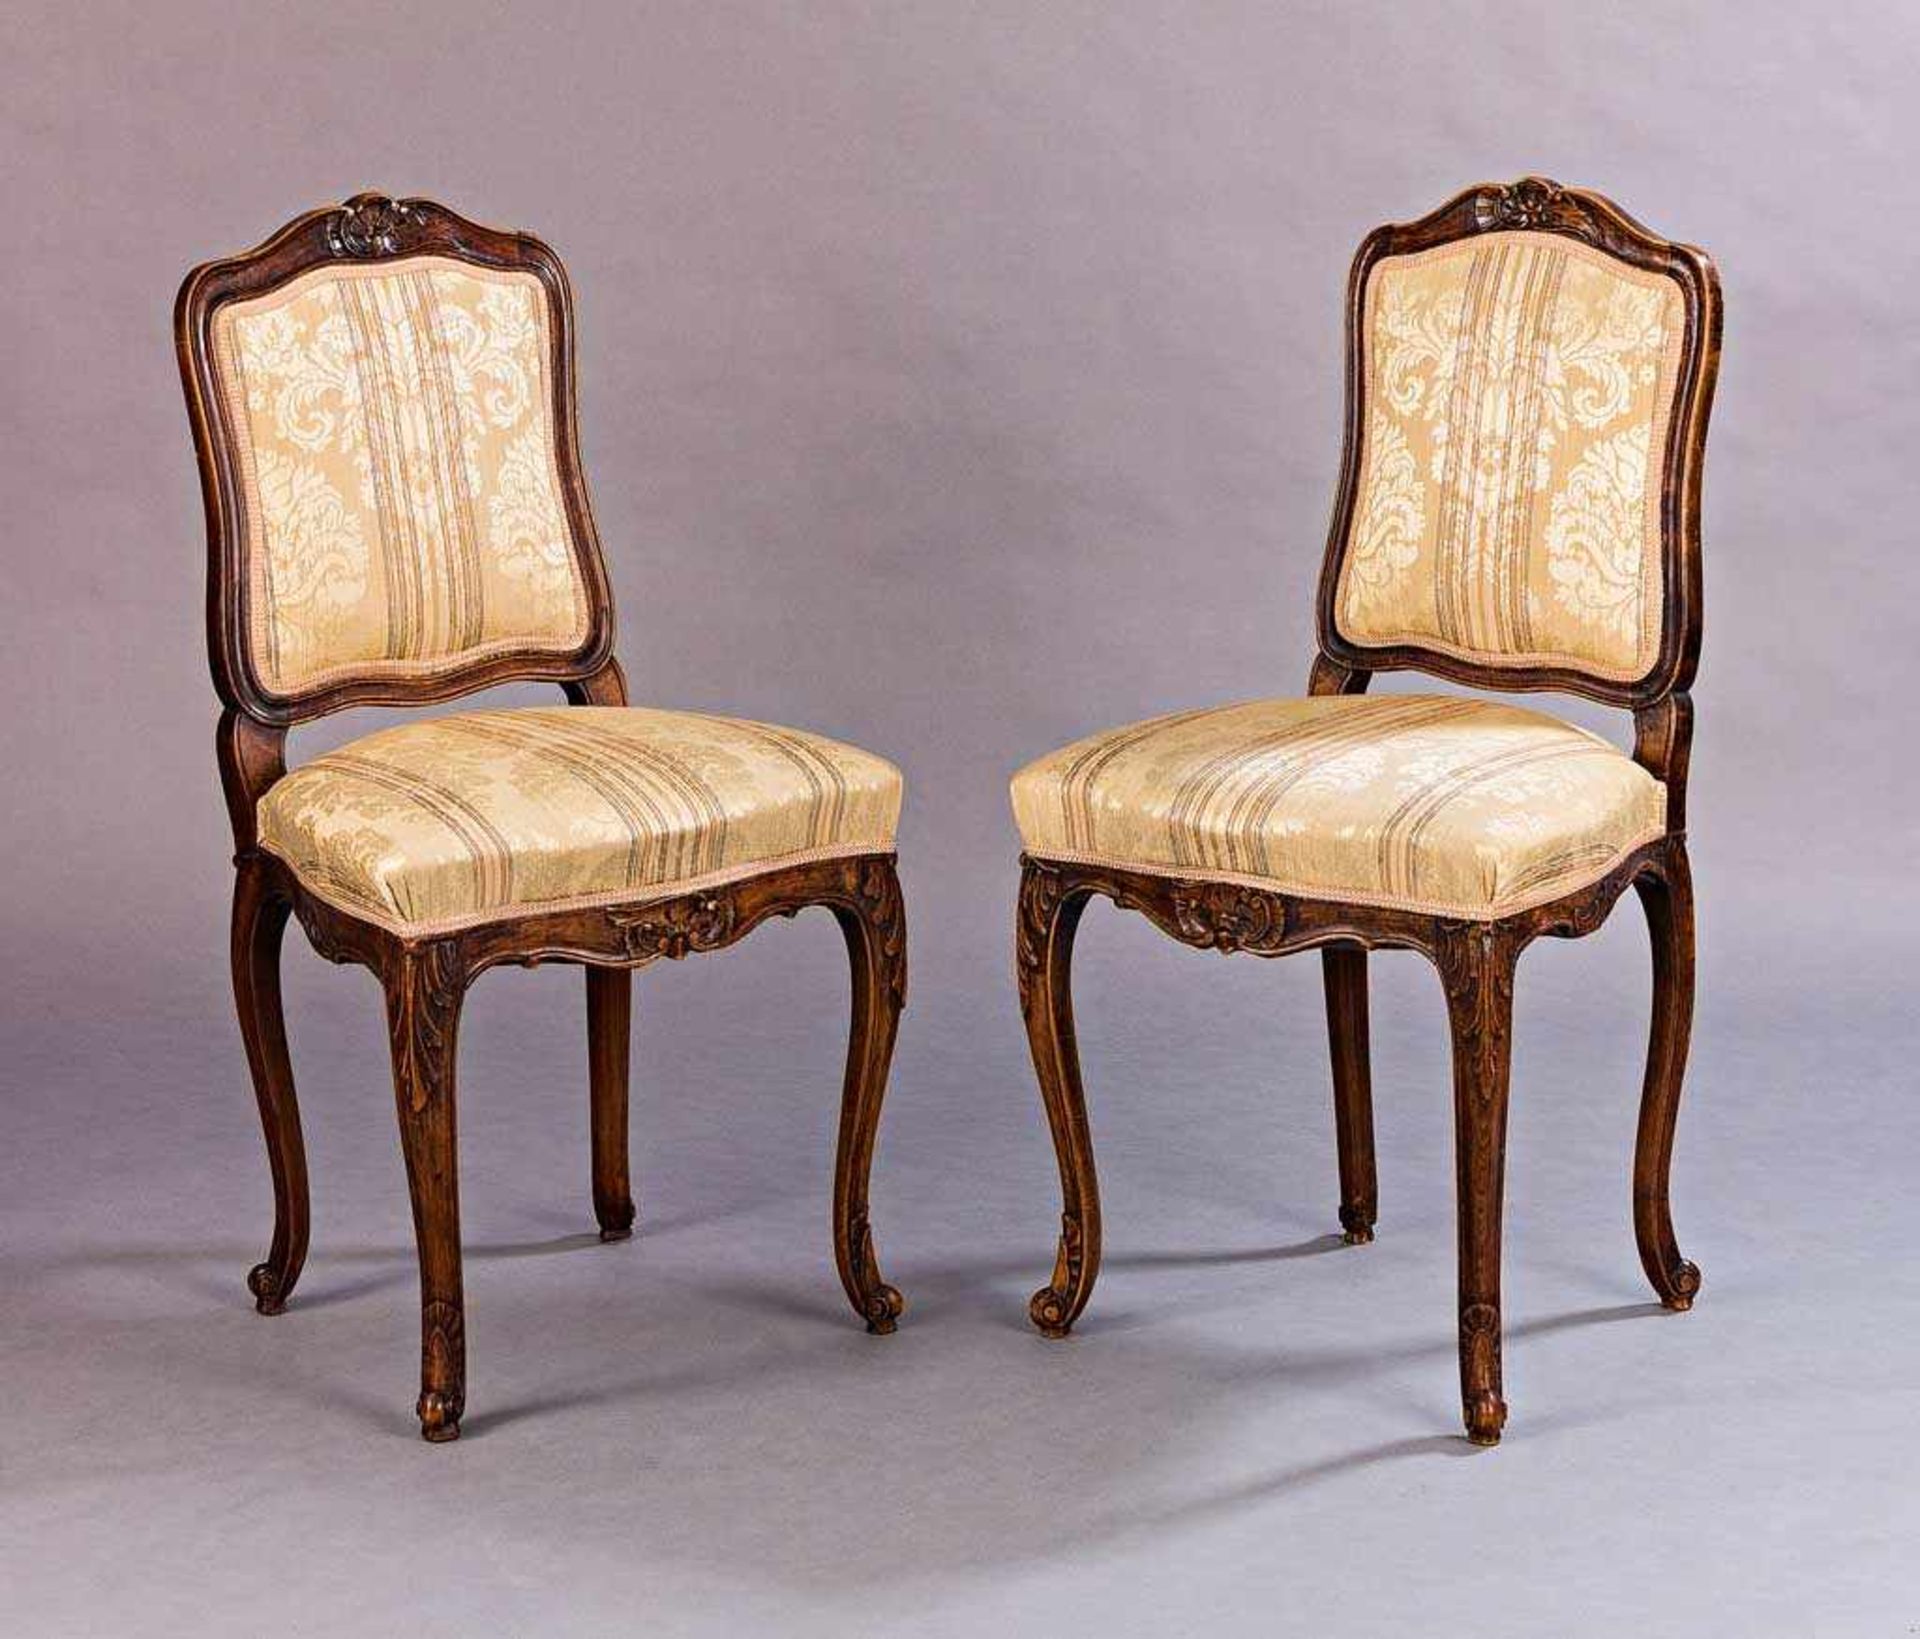 Paar Stühle im Barockstil. Polstersitz. Buche. 19./20. Jh. H 96 (50) cm